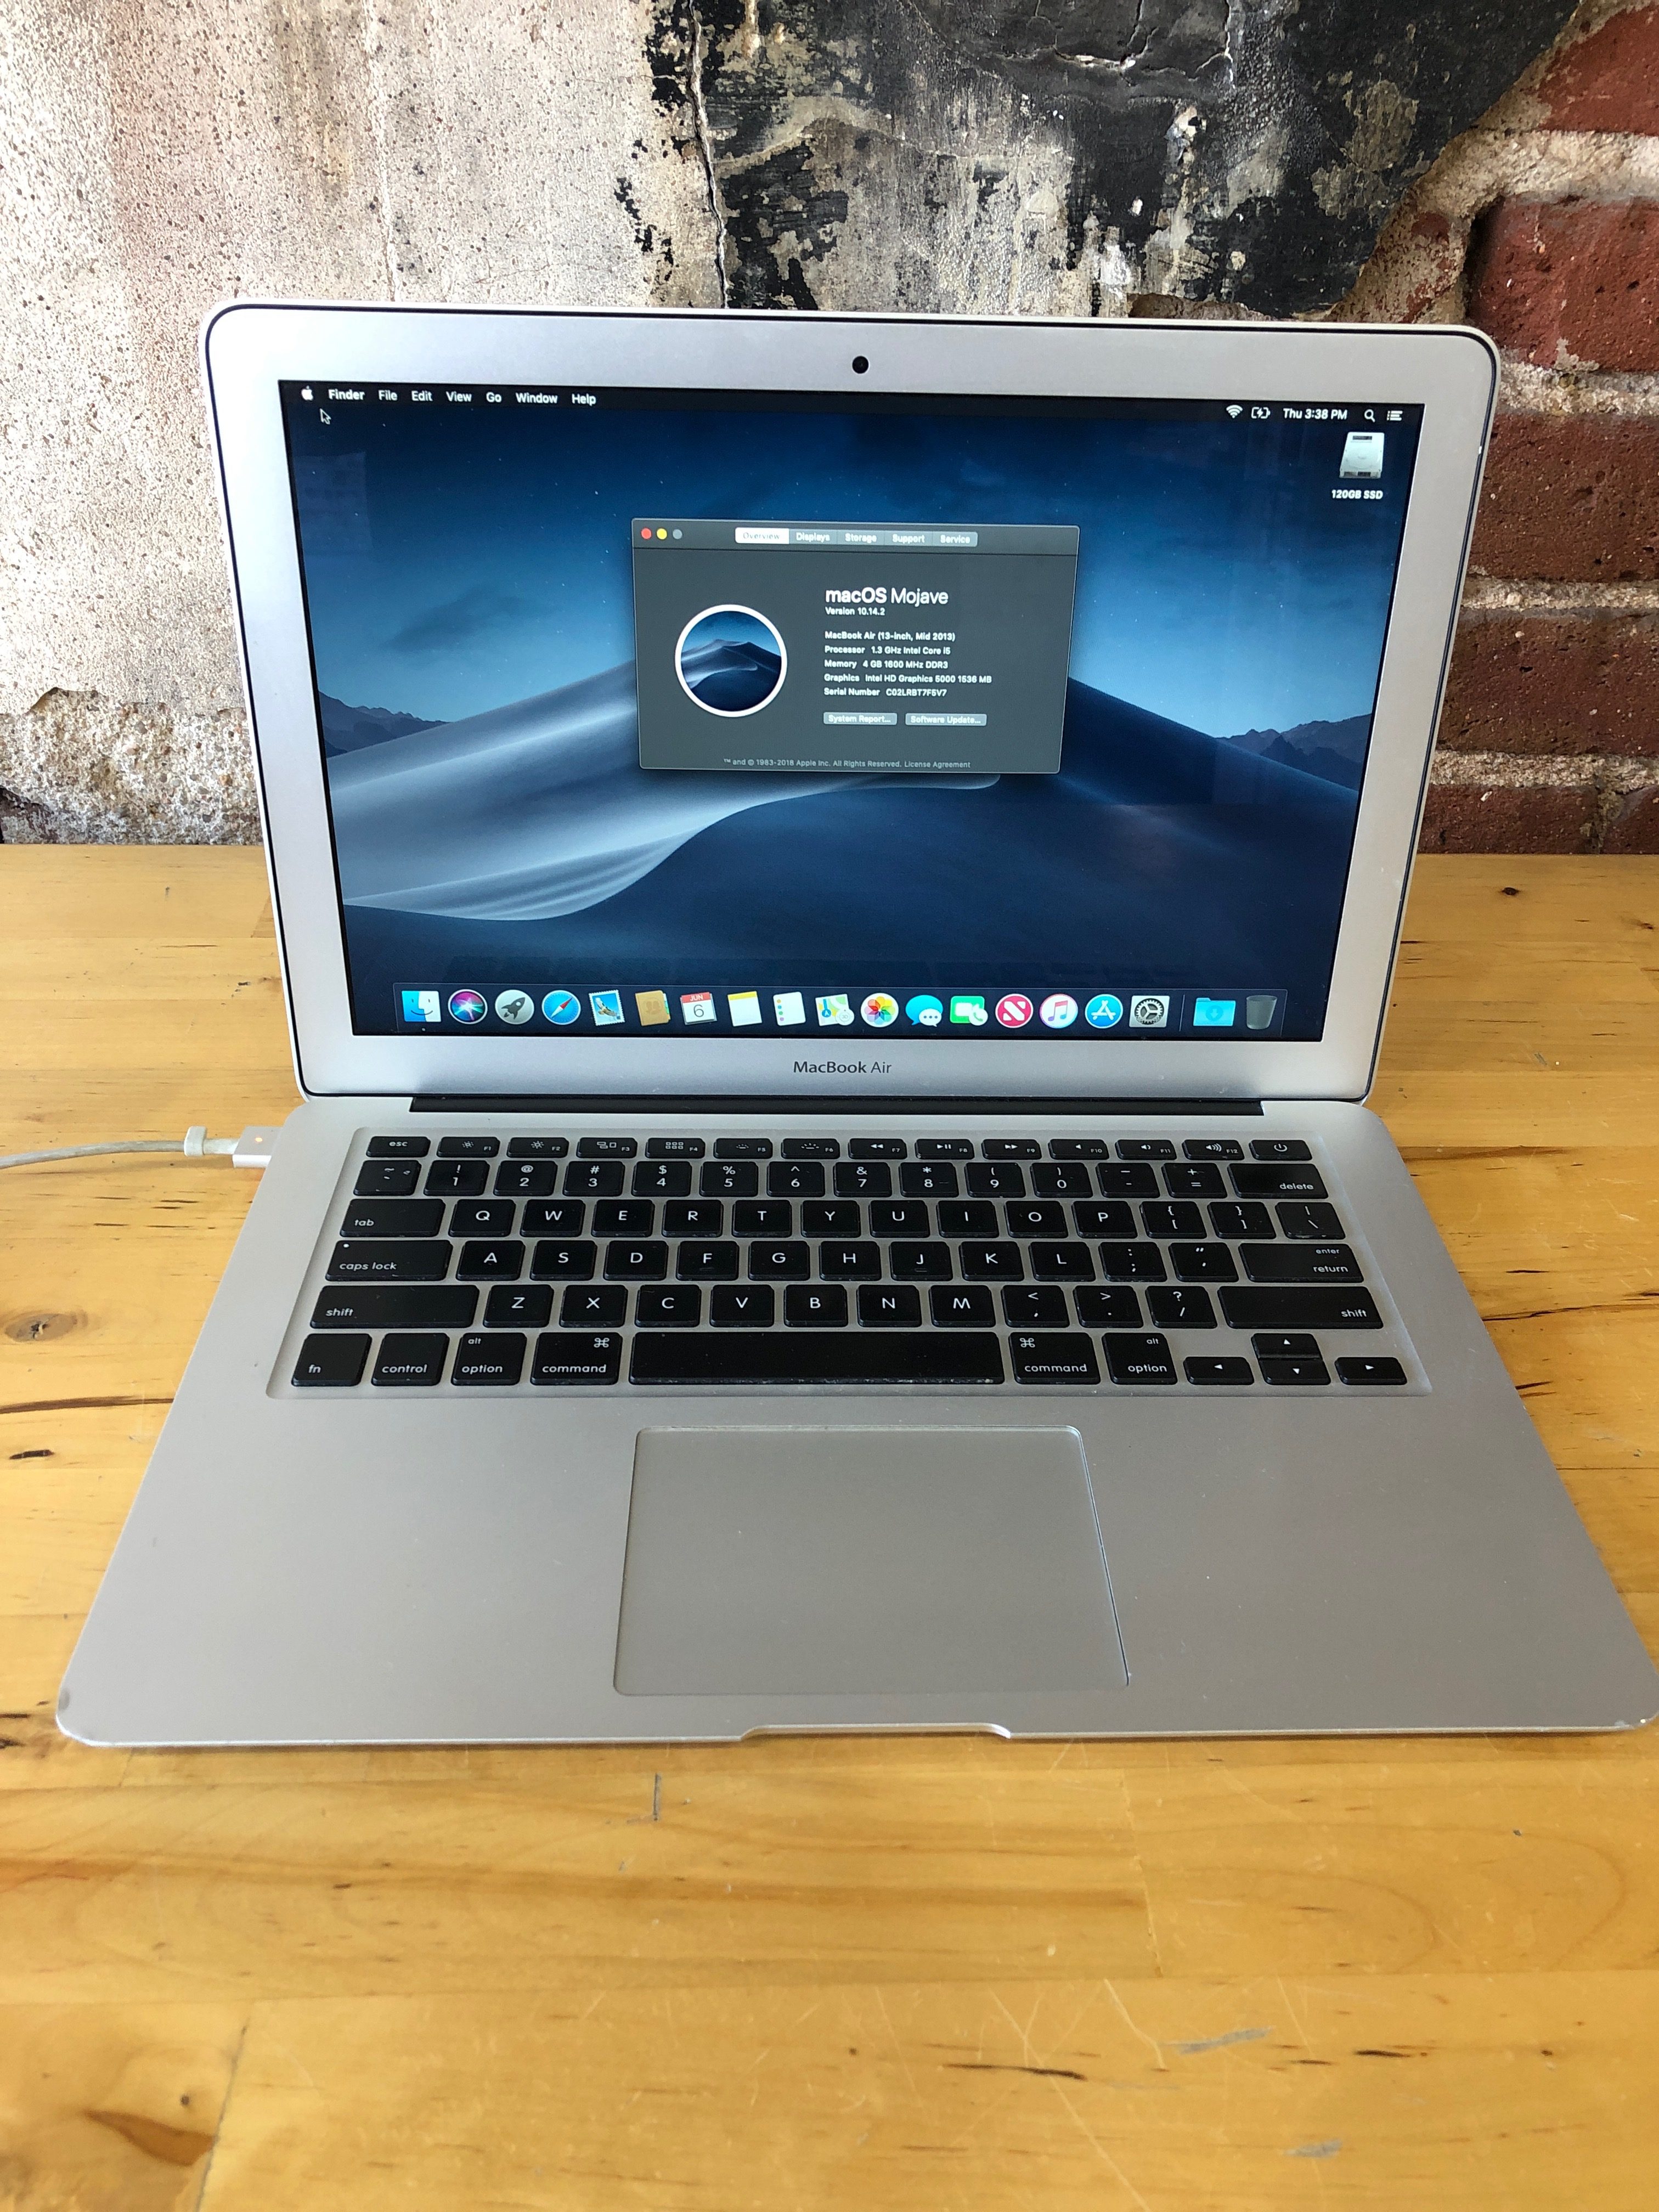 Sold - Mid 2013 MacBook Air 13" - $495 - Denver Mac Repair